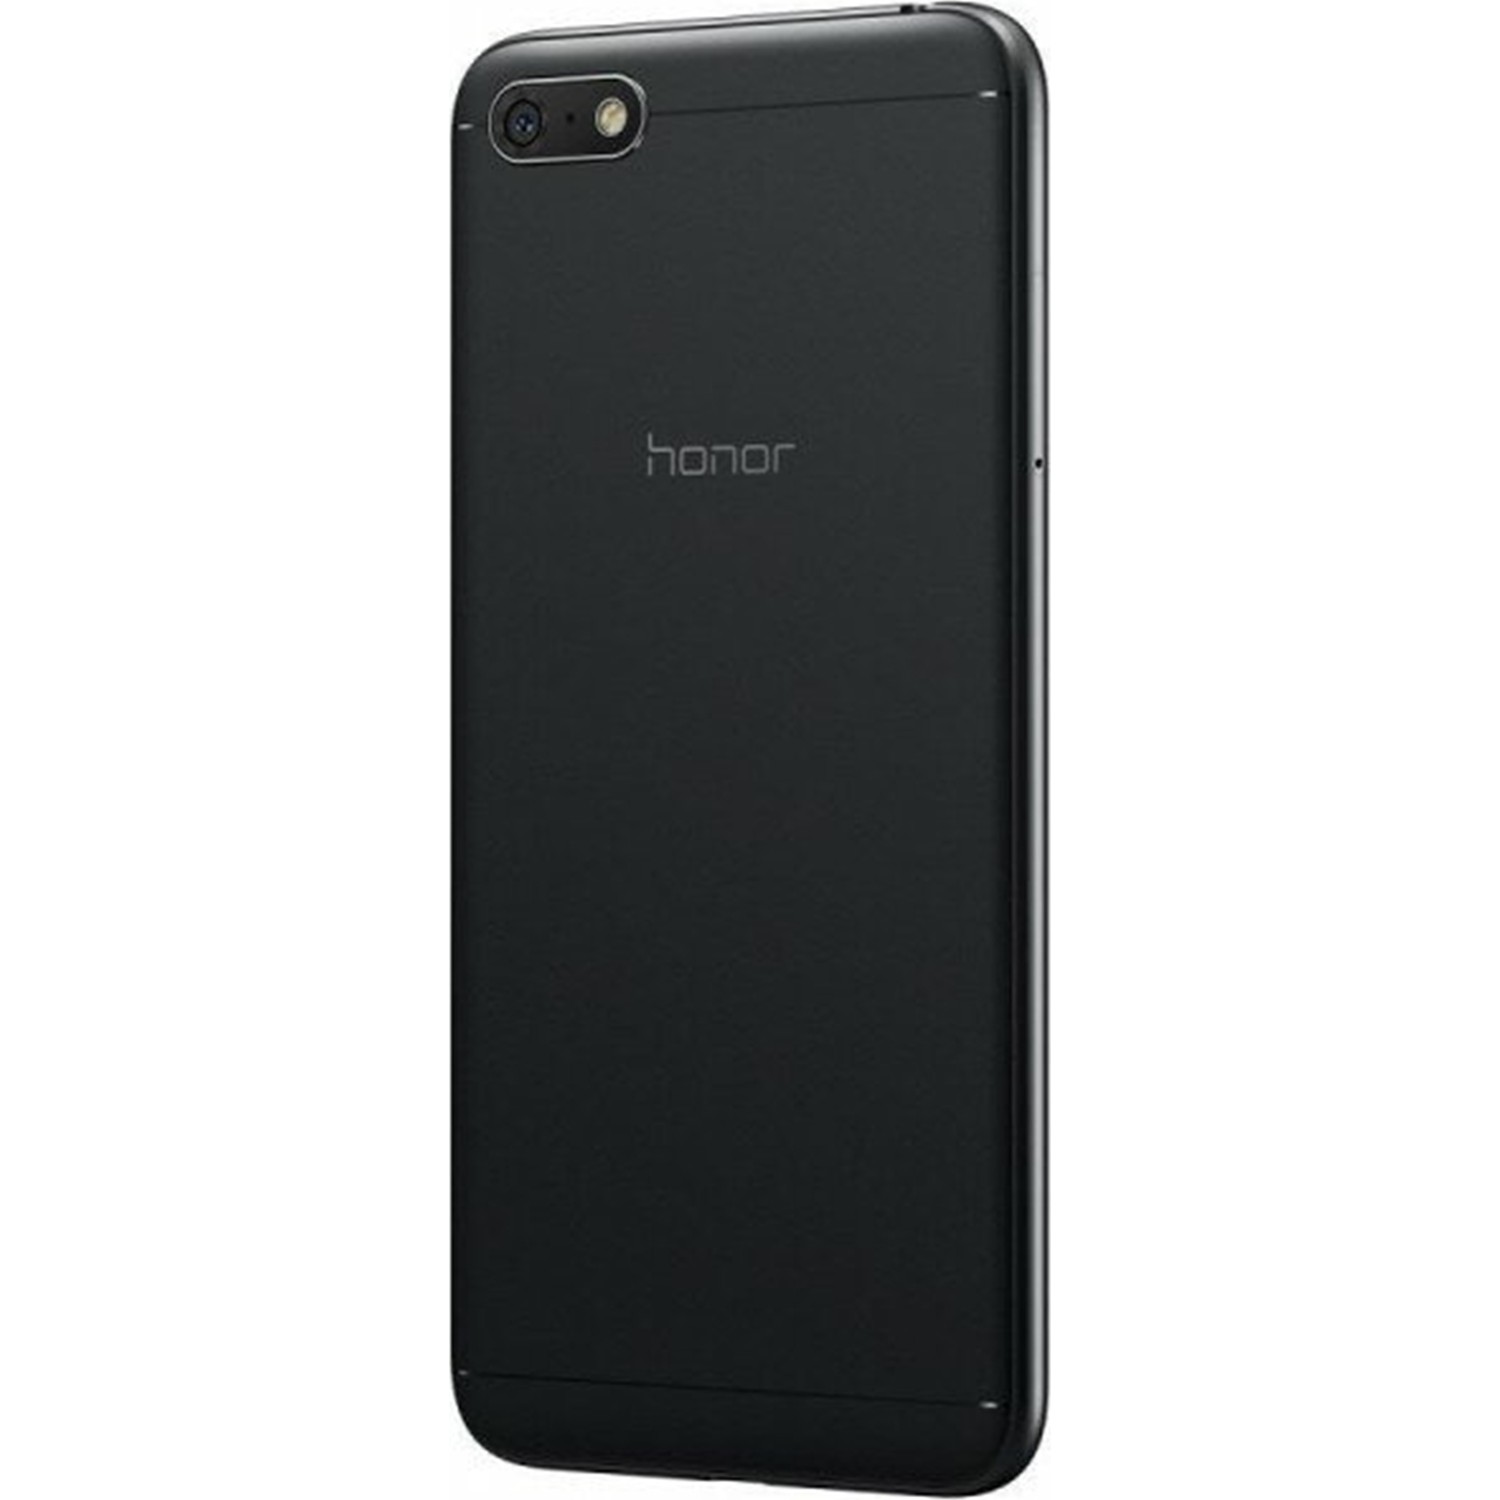 Honor 7a dua. Huawei Honor 7a. Смартфон Honor 7s 16gb. Huawei Honor 7a 5.7. Honor 7a 5.45 inch.